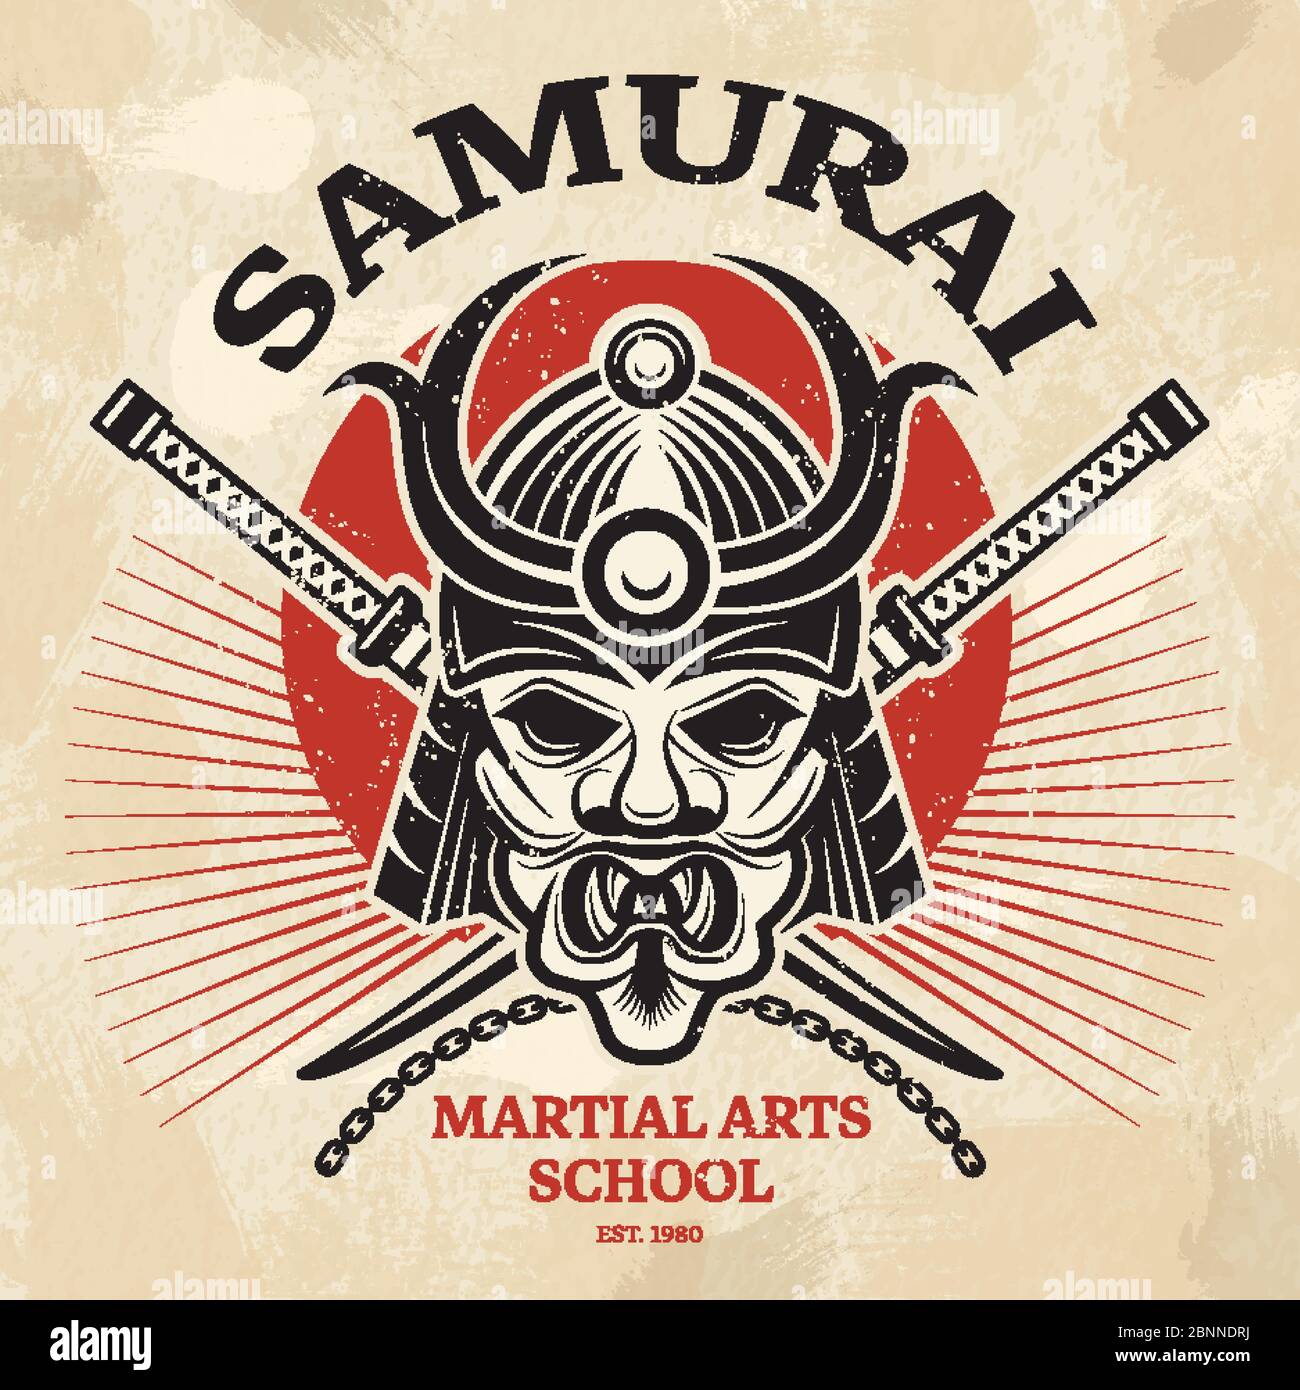 Japanisches Martial Poster. Agressive asiatische Krieger Maske für Rüstung Helm Tauwerk katana Schwert Vektor Plakat Design Stock Vektor